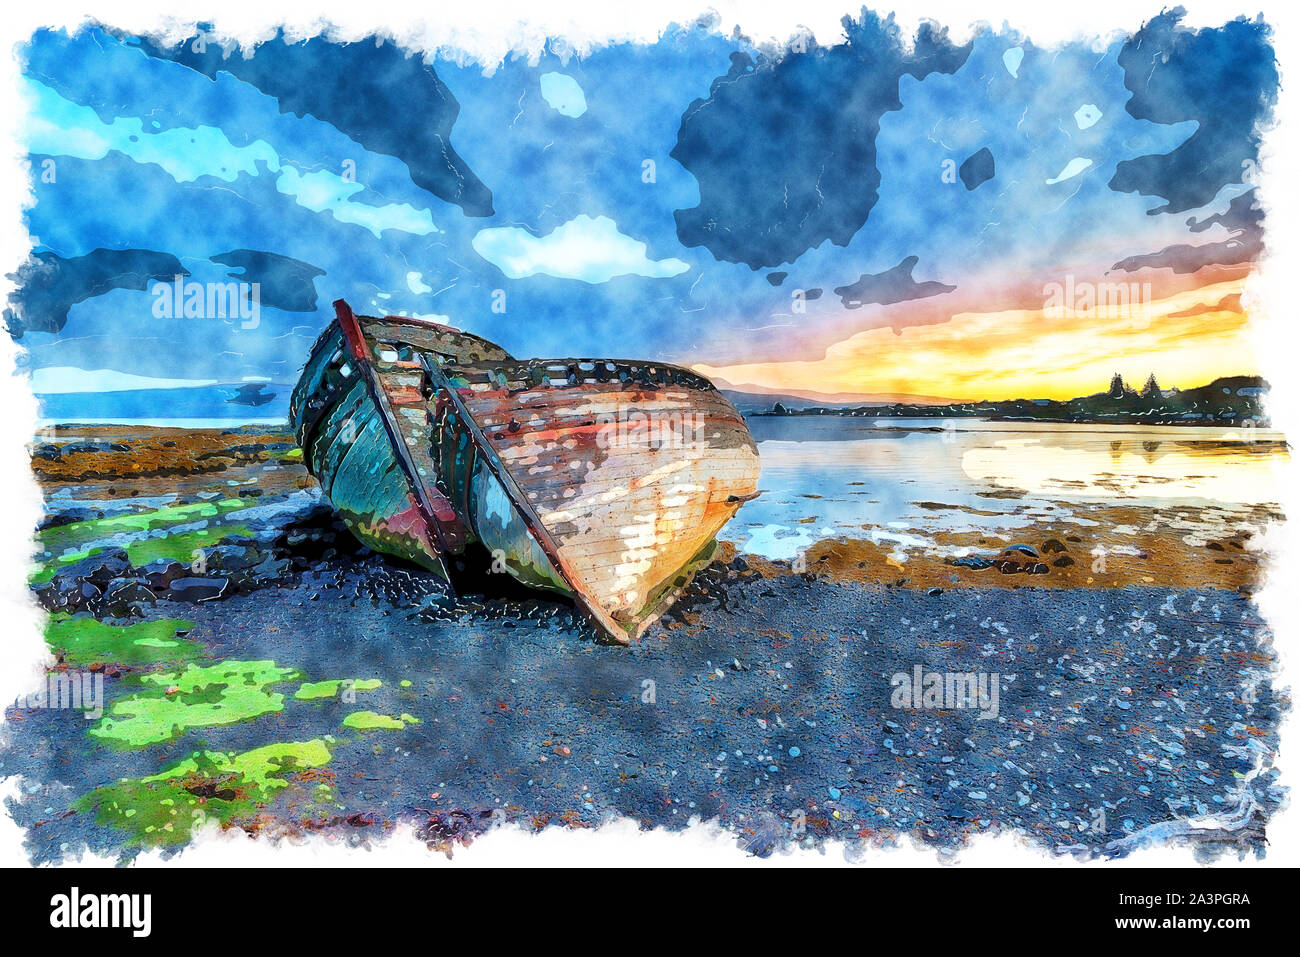 La pittura ad acquerello di un burrascoso alba abbandonato barche da pesca a Salen sull'Isle of Mull in Scozia Foto Stock